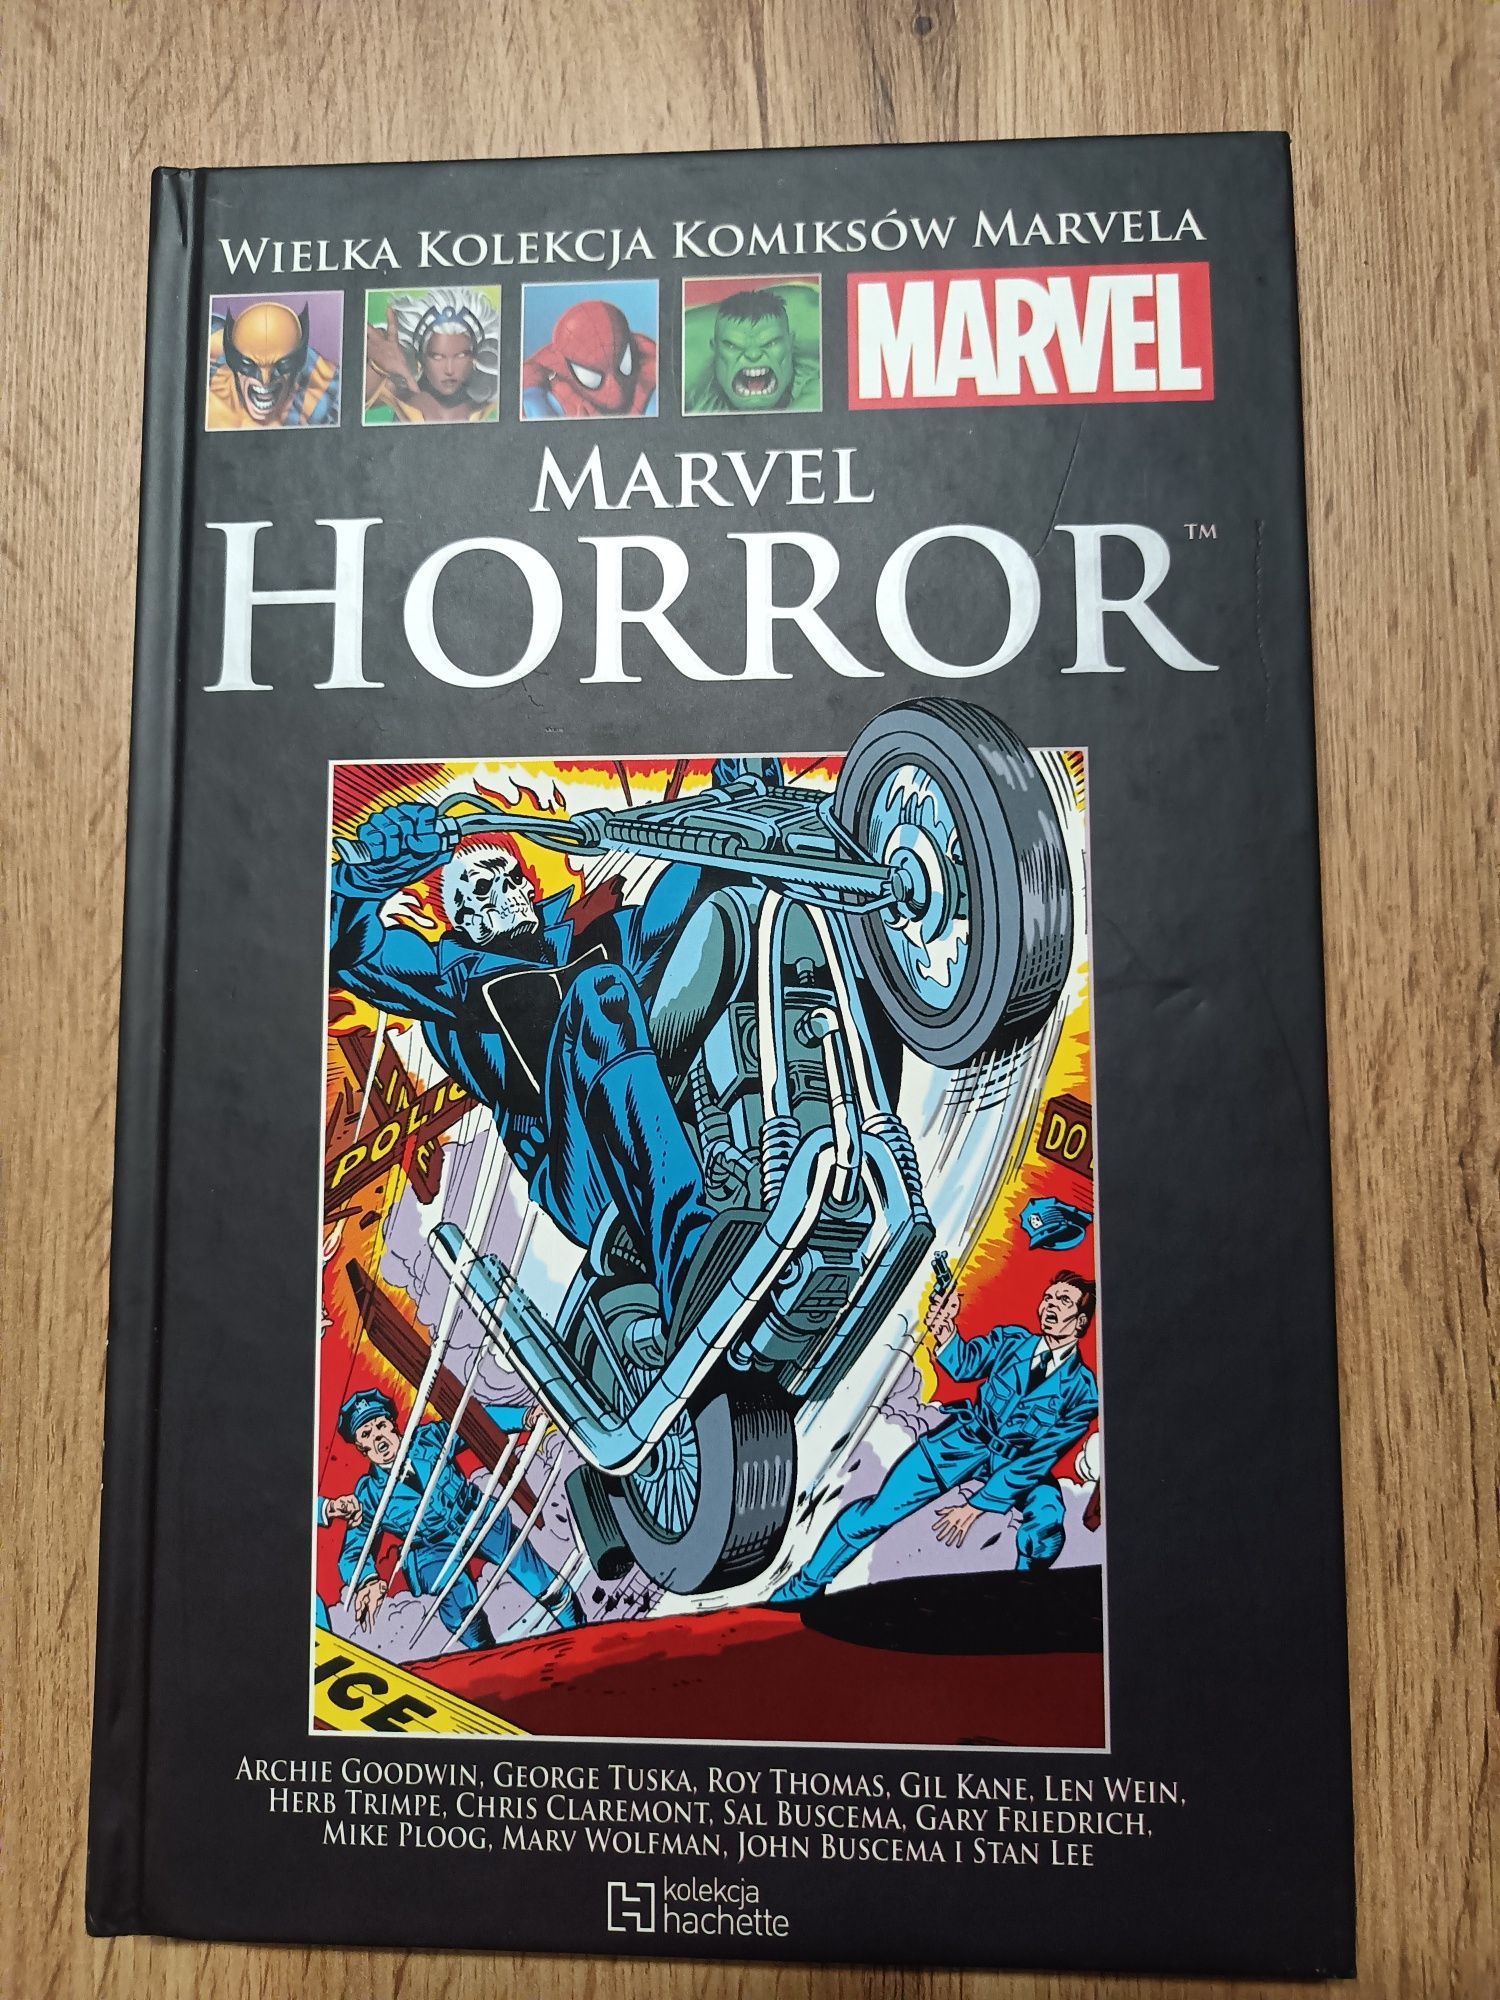 WKKM Wielka Kolekcja Marvela 115 Marvel Horror